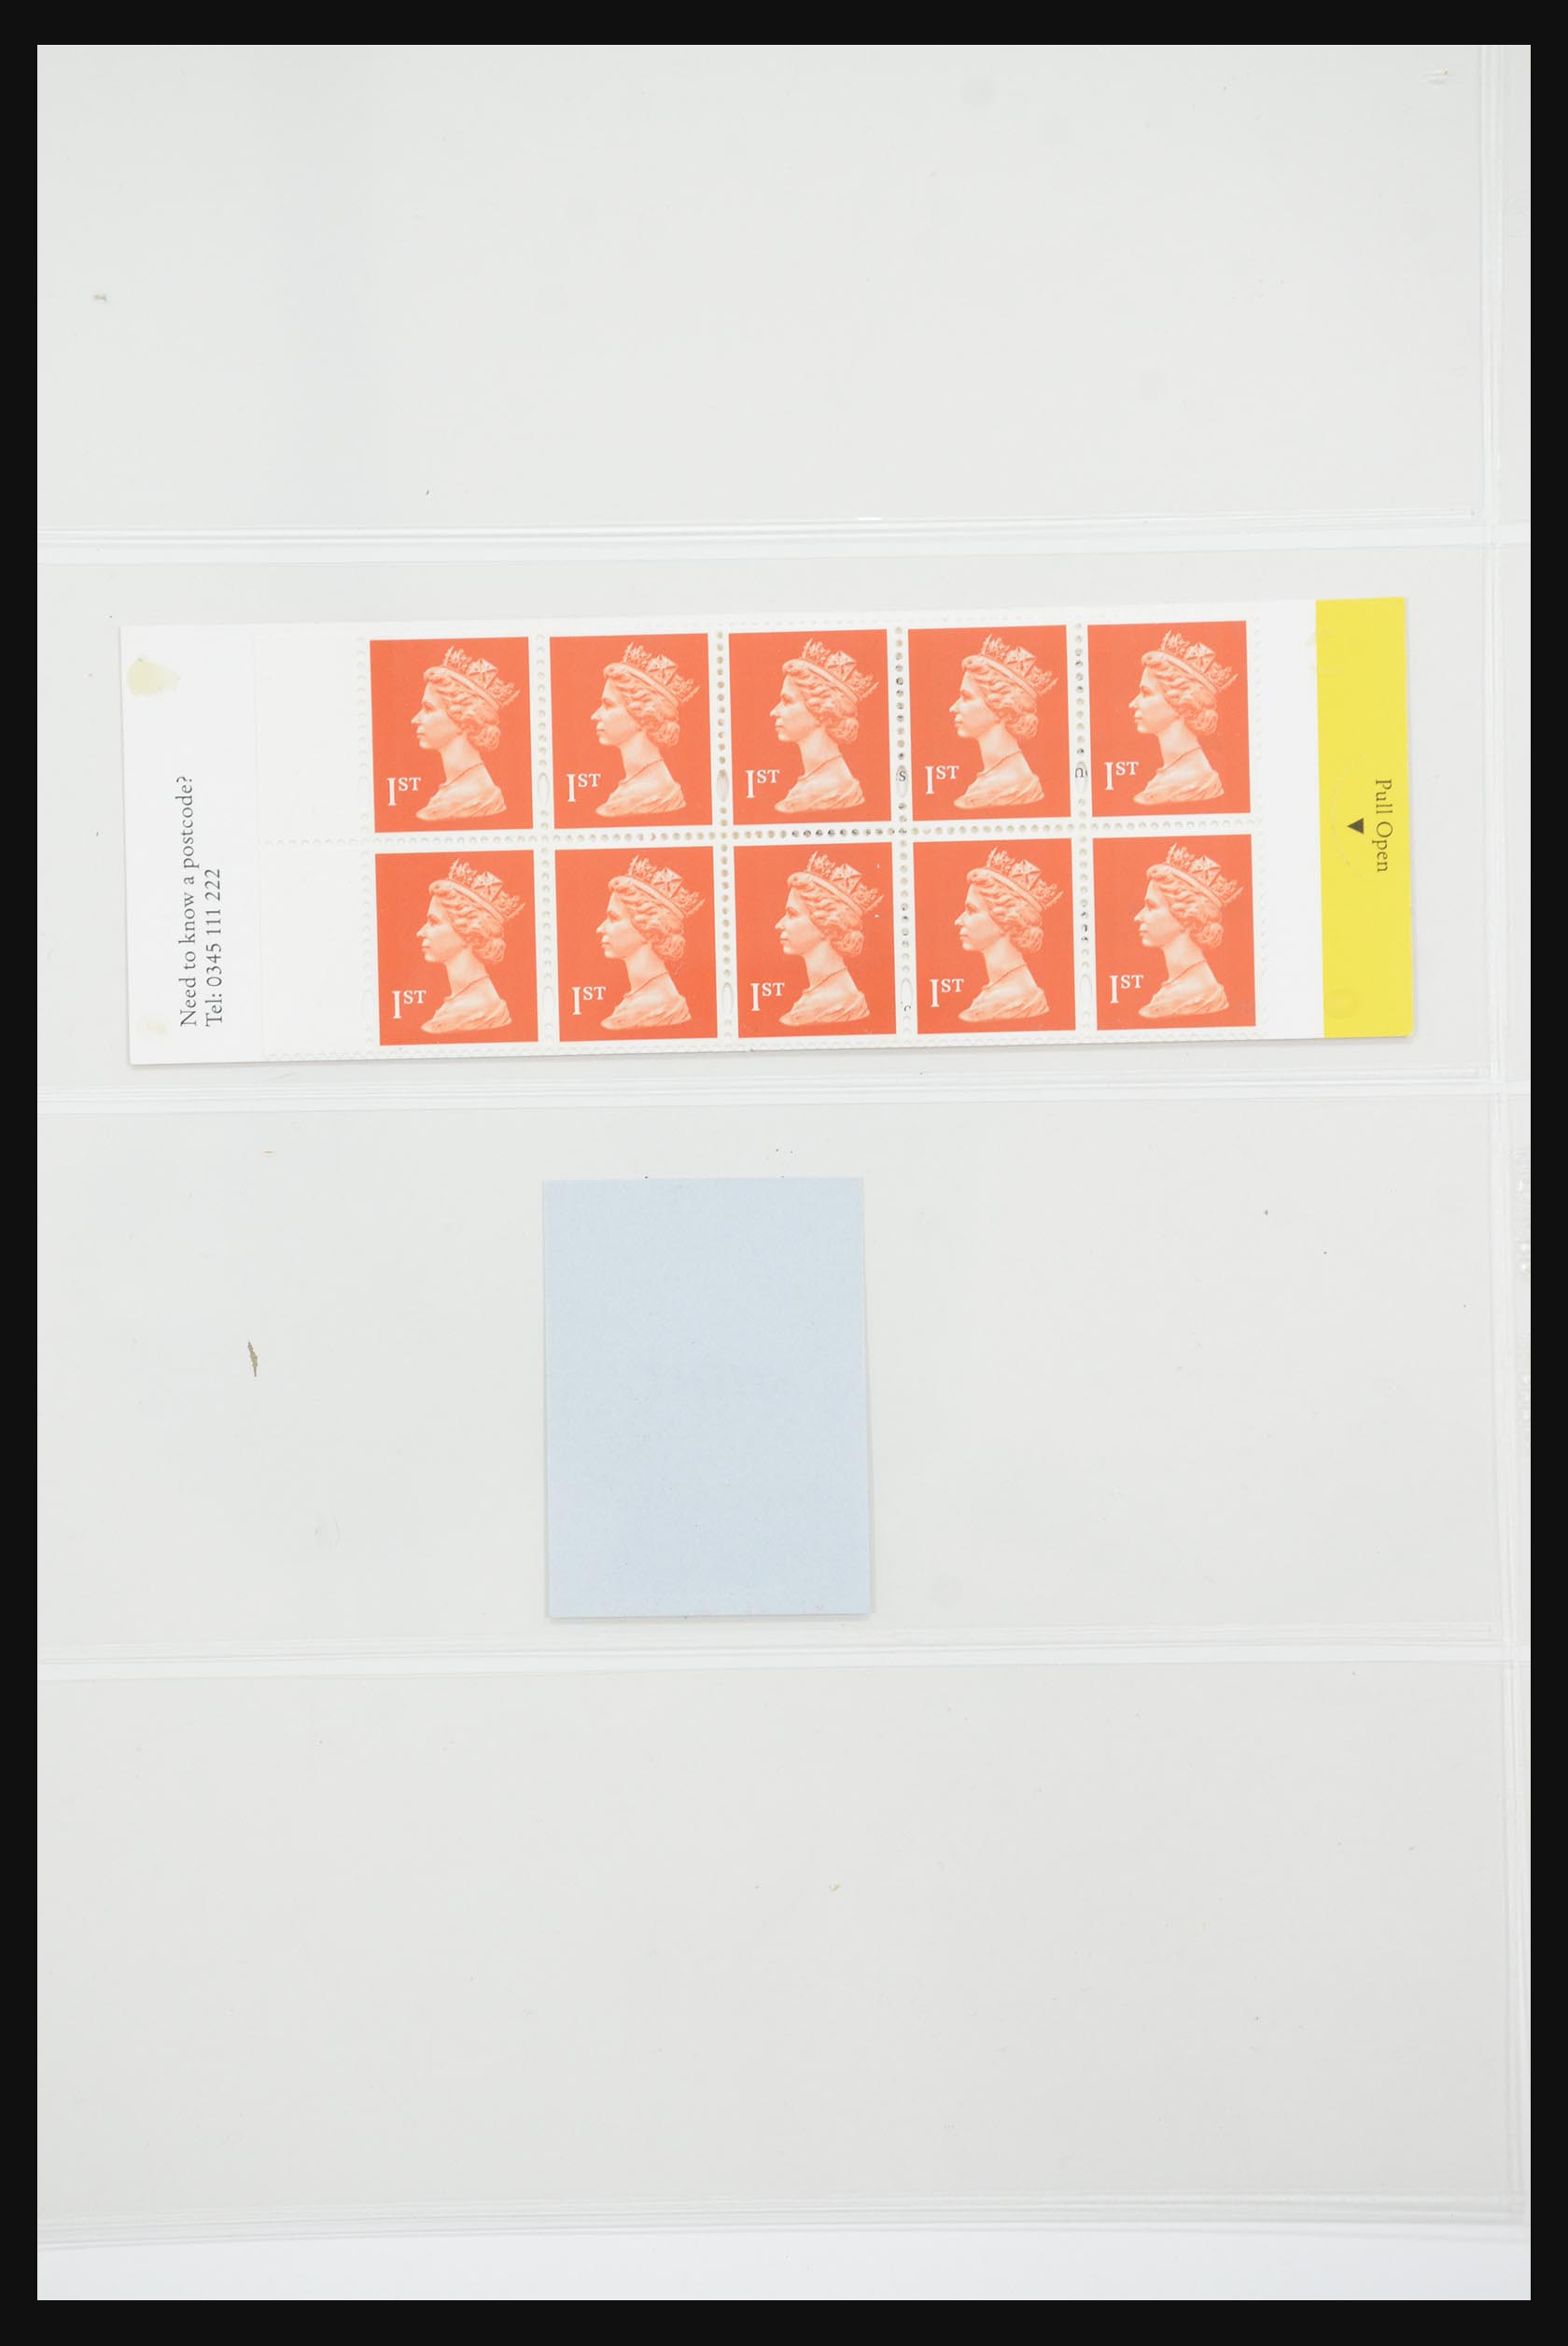 31960 116 - 31960 Engeland postzegelboekjes 1989-2000.